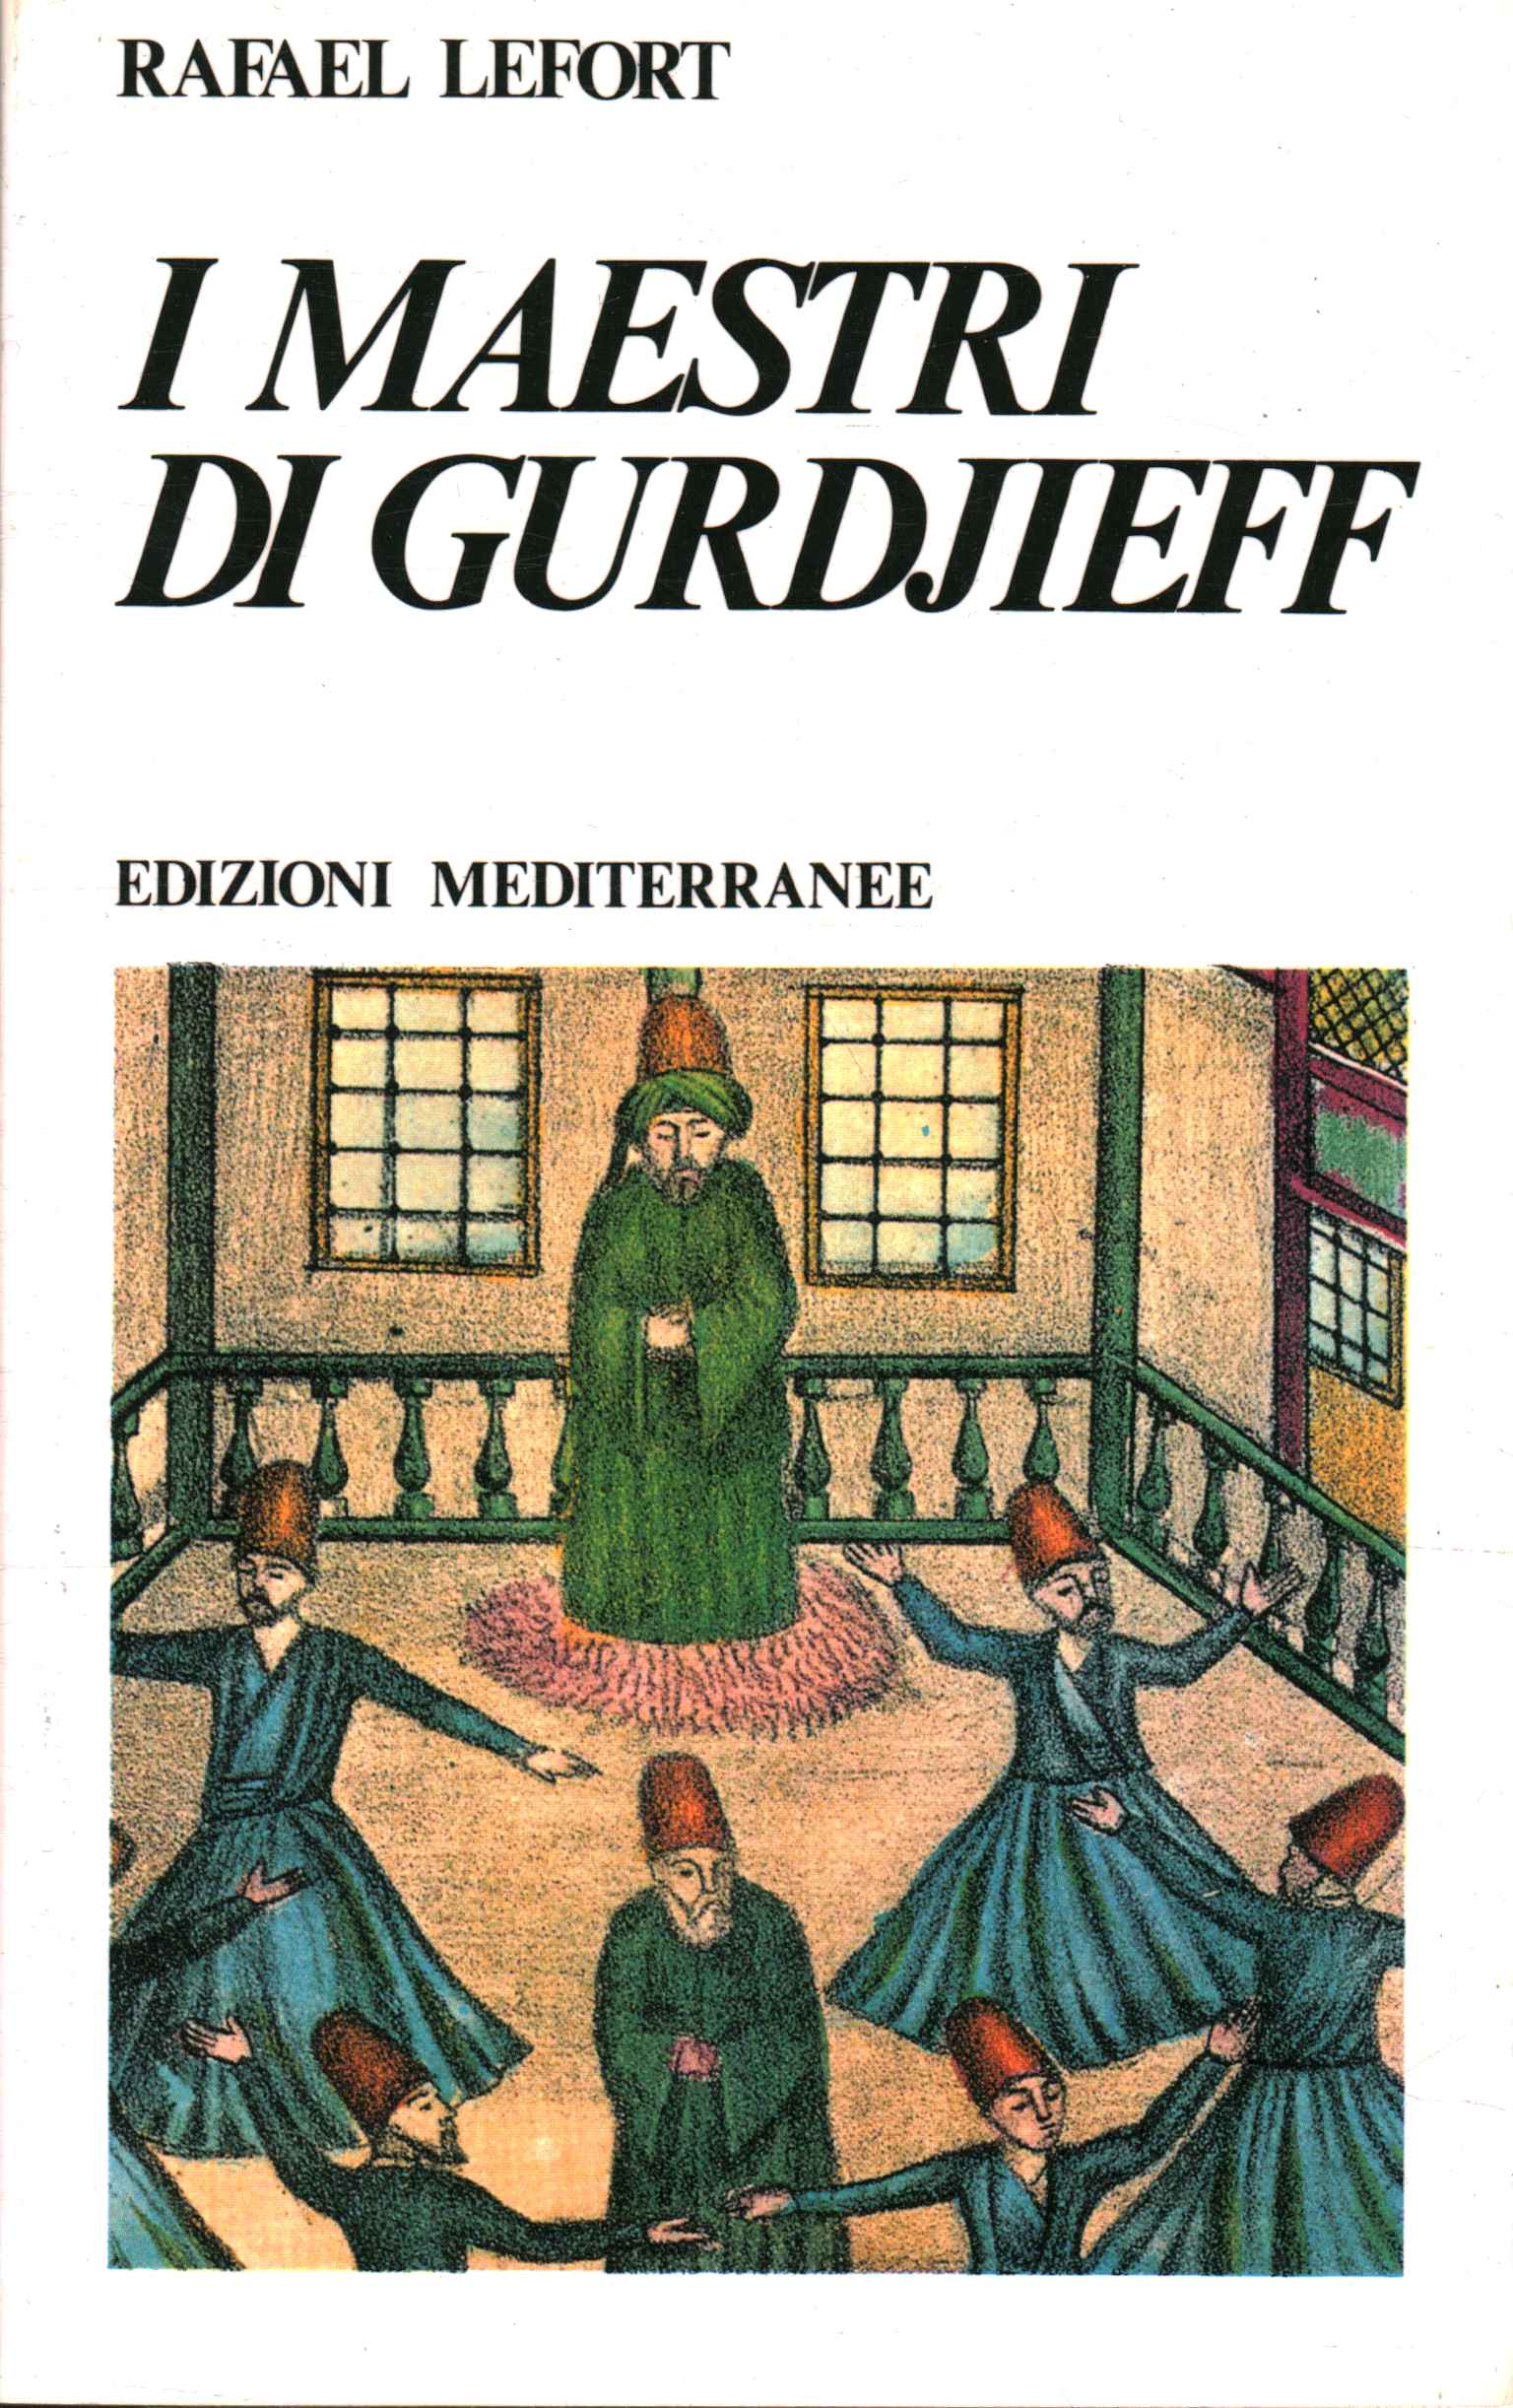 Gurdjieff's masters